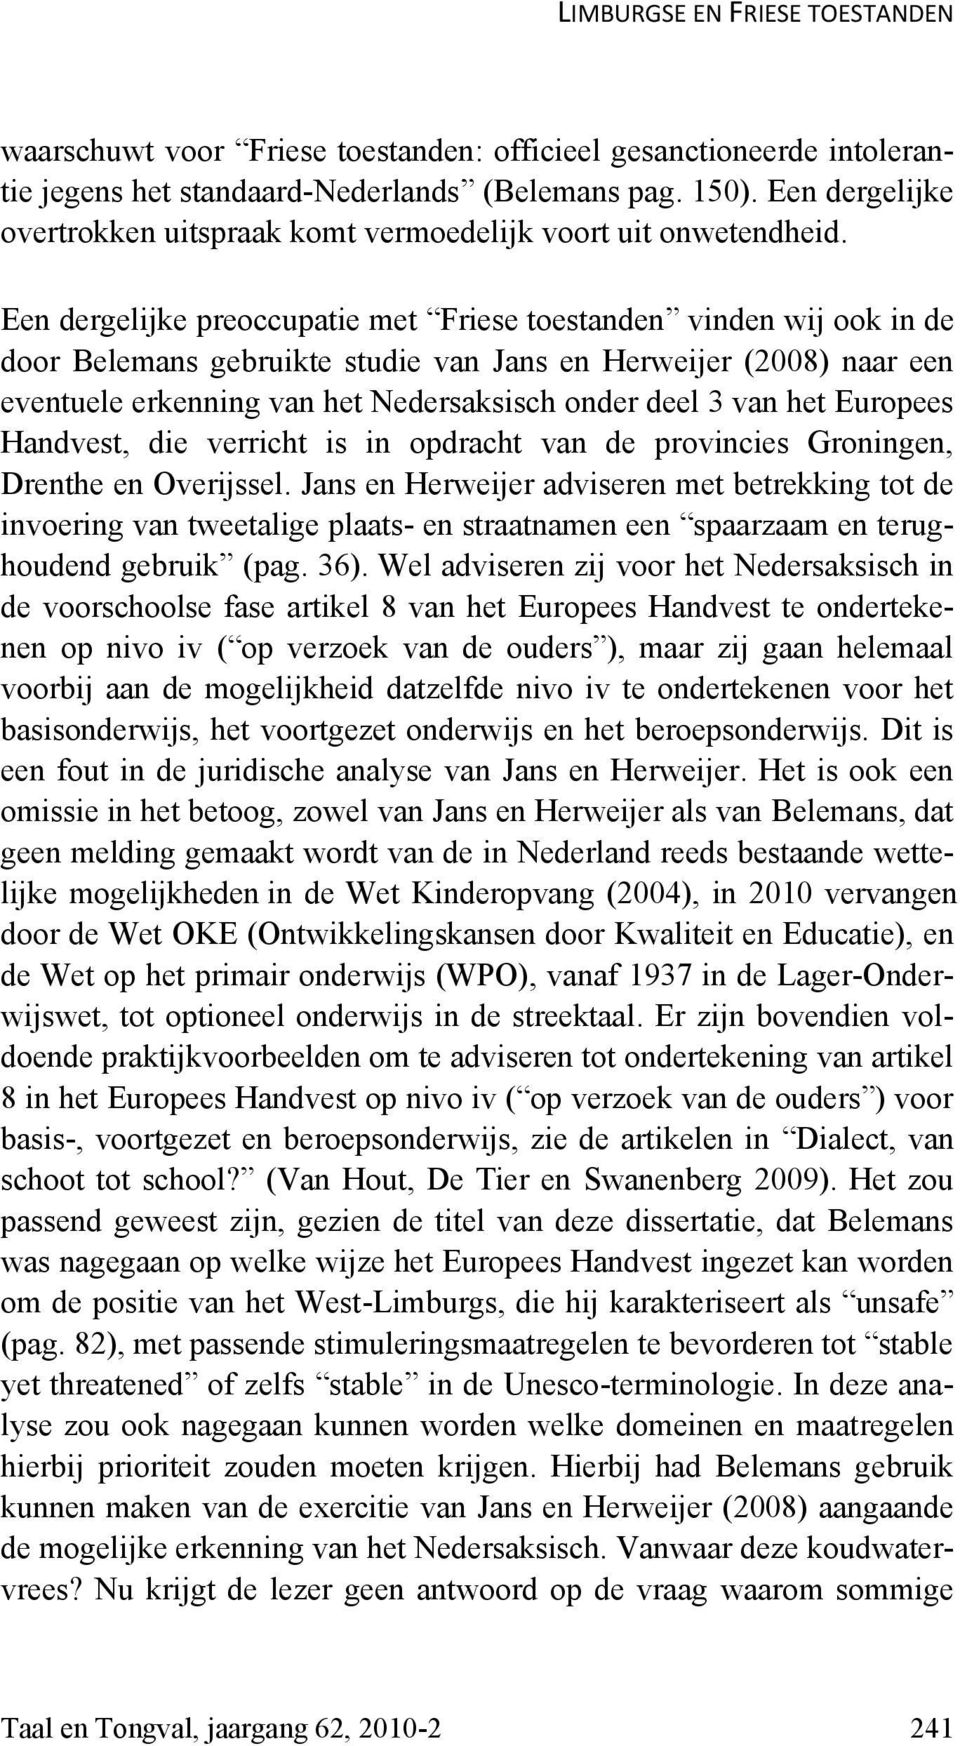 Een dergelijke preoccupatie met Friese toestanden vinden wij ook in de door Belemans gebruikte studie van Jans en Herweijer (2008) naar een eventuele erkenning van het Nedersaksisch onder deel 3 van